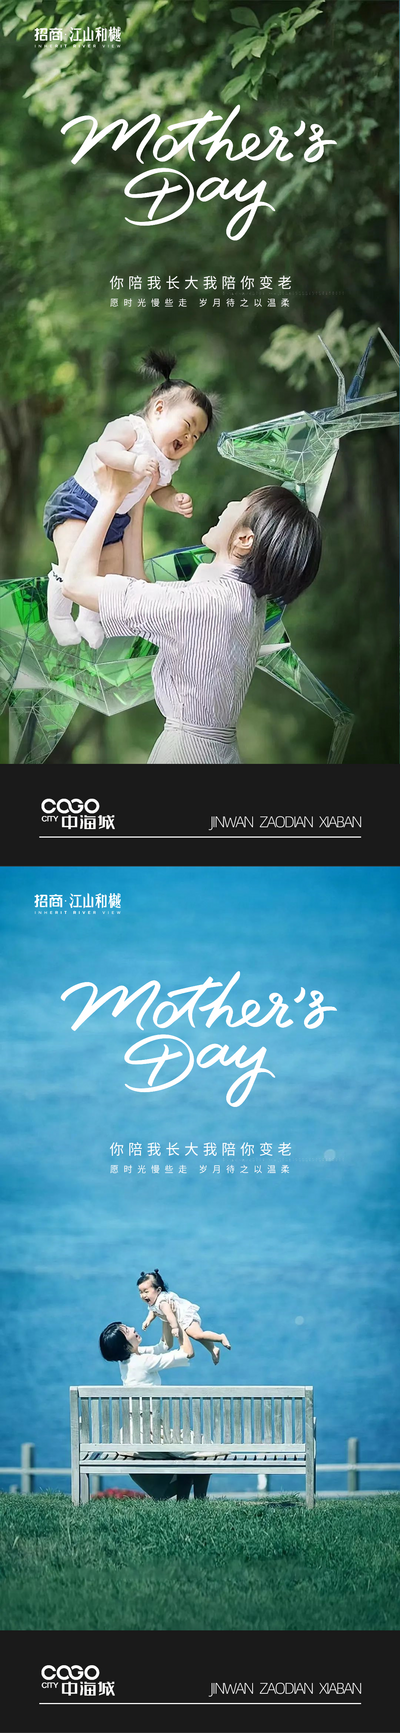 【南门网】广告 海波 节日 母亲节 母子 温馨 系列